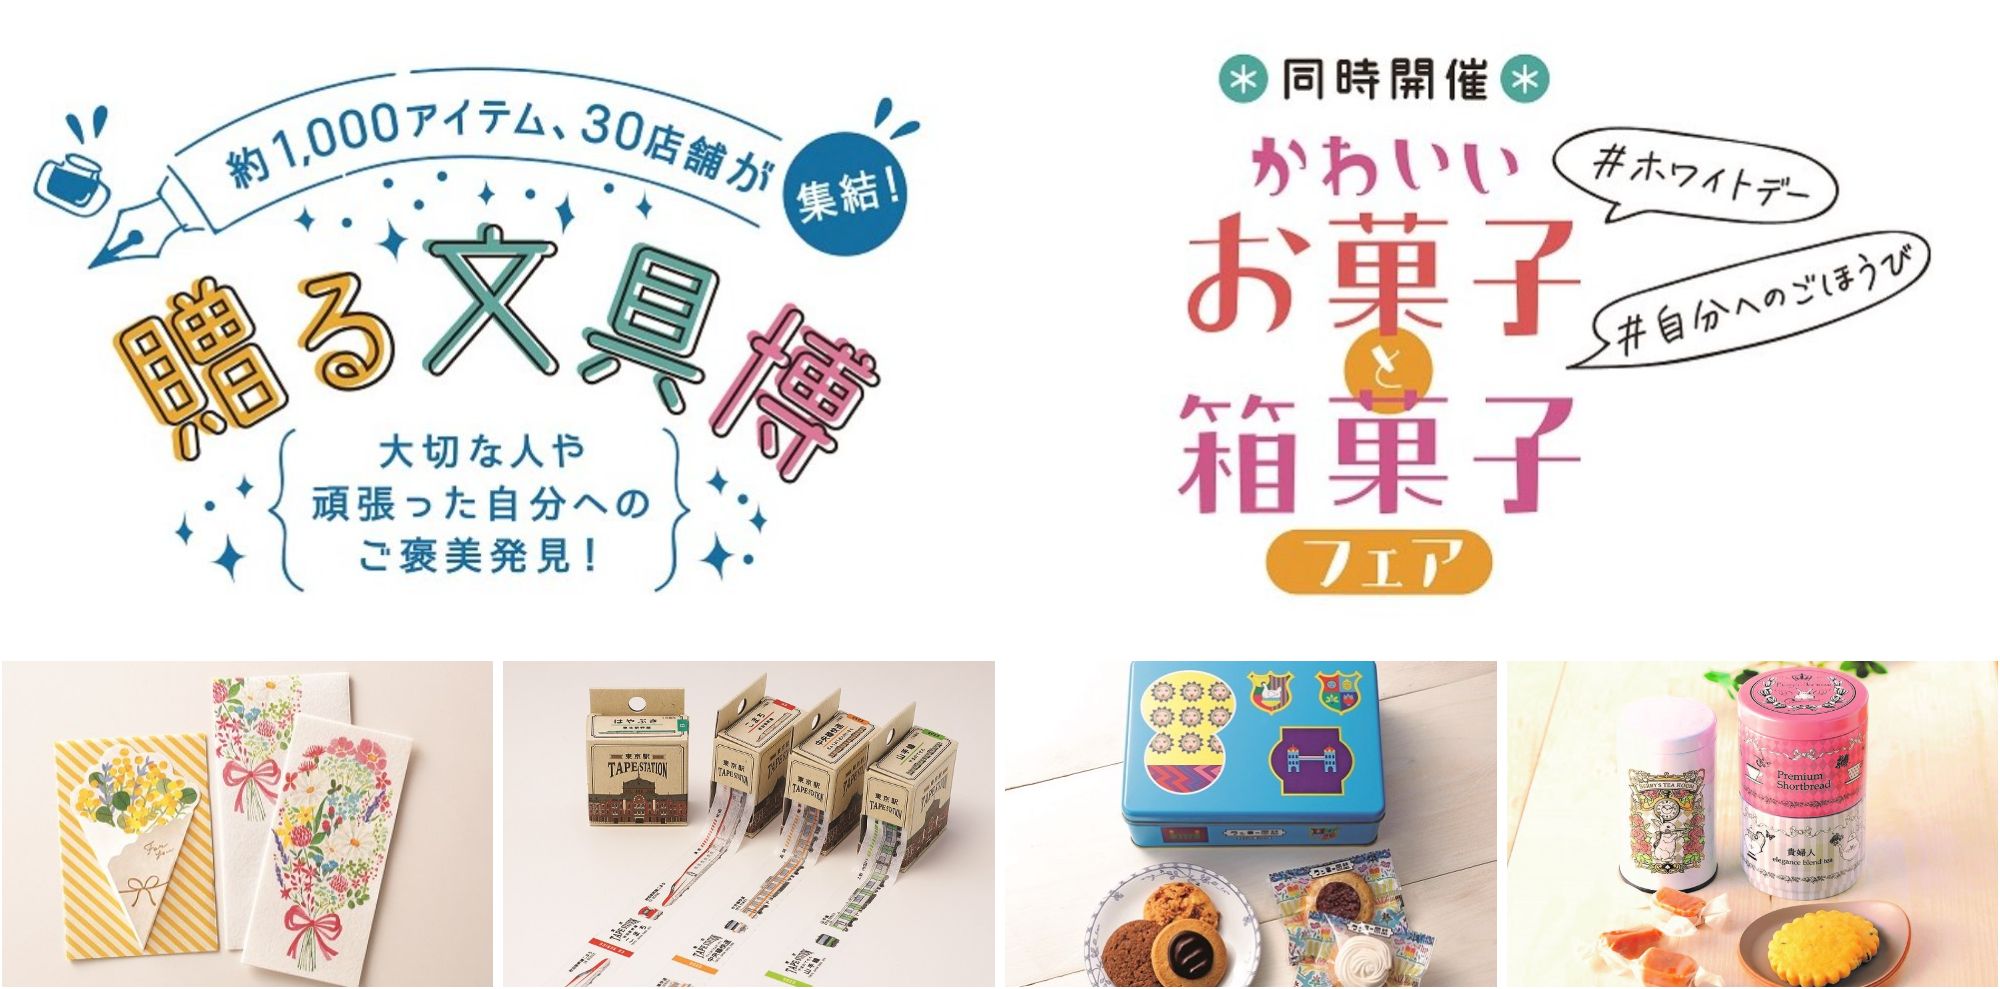 東武百貨店 池袋本店 贈る文具博 と かわいいお菓子と箱菓子フェア を3月11日より開催 ココシル池袋